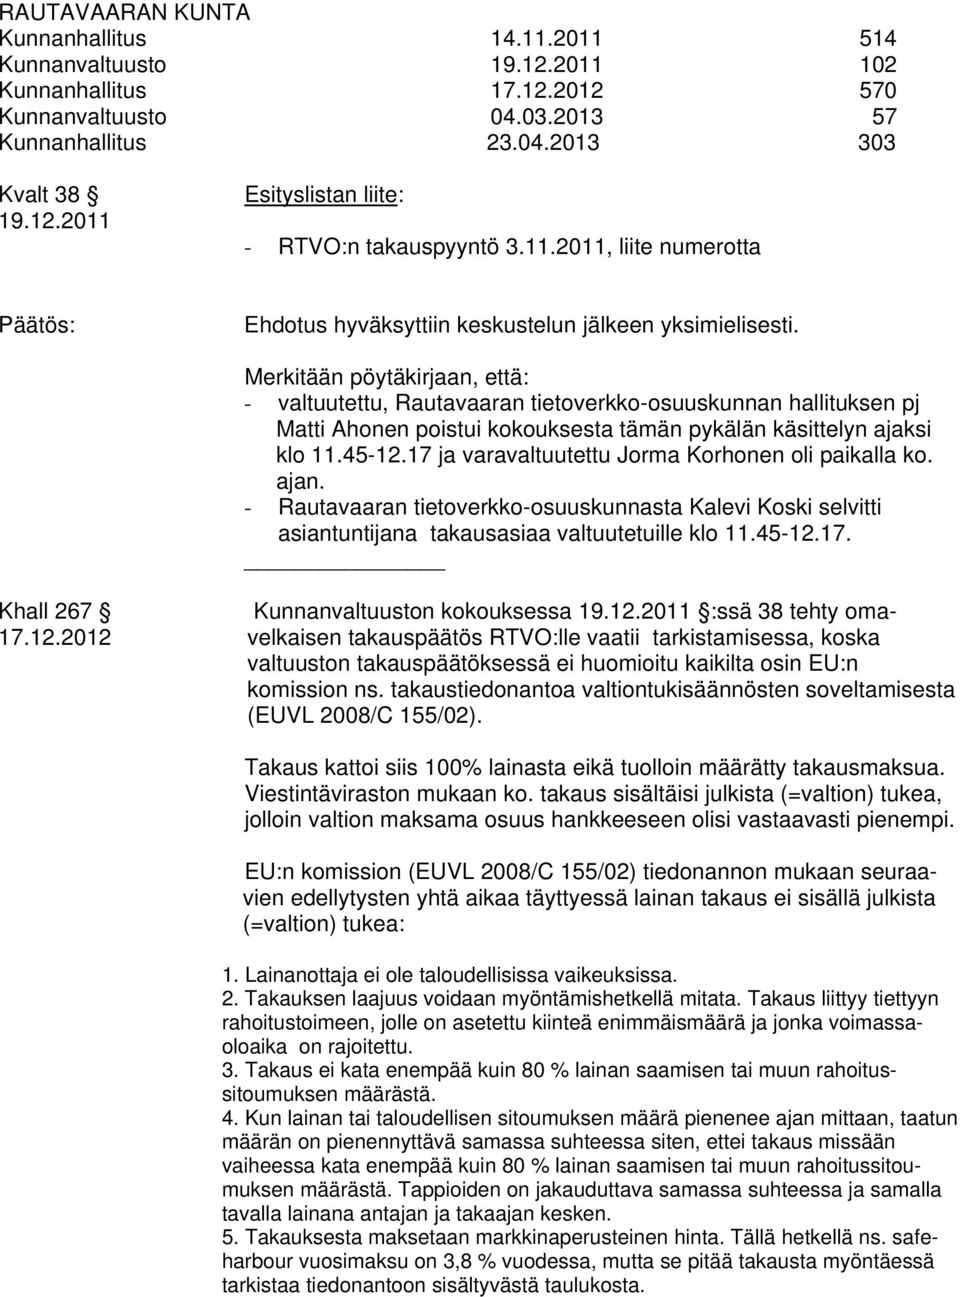 Merkitään pöytäkirjaan, että: - valtuutettu, Rautavaaran tietoverkko-osuuskunnan hallituksen pj Matti Ahonen poistui kokouksesta tämän pykälän käsittelyn ajaksi klo 11.45-12.